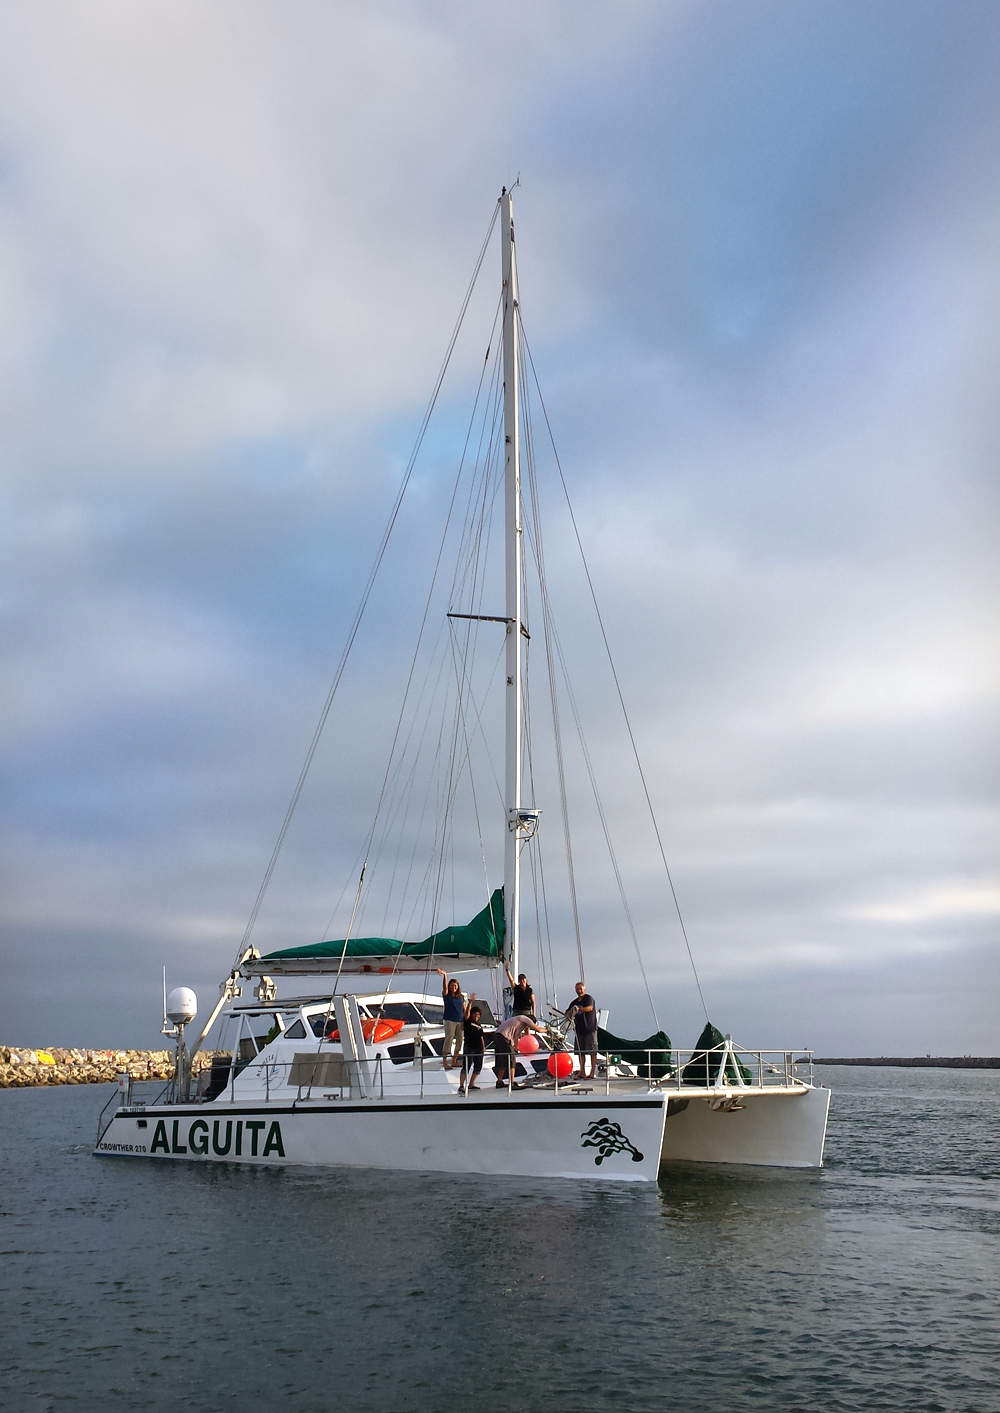 The R/V Alguita, a 50-foot catamaran. (Credit: Lorena Mendoza)